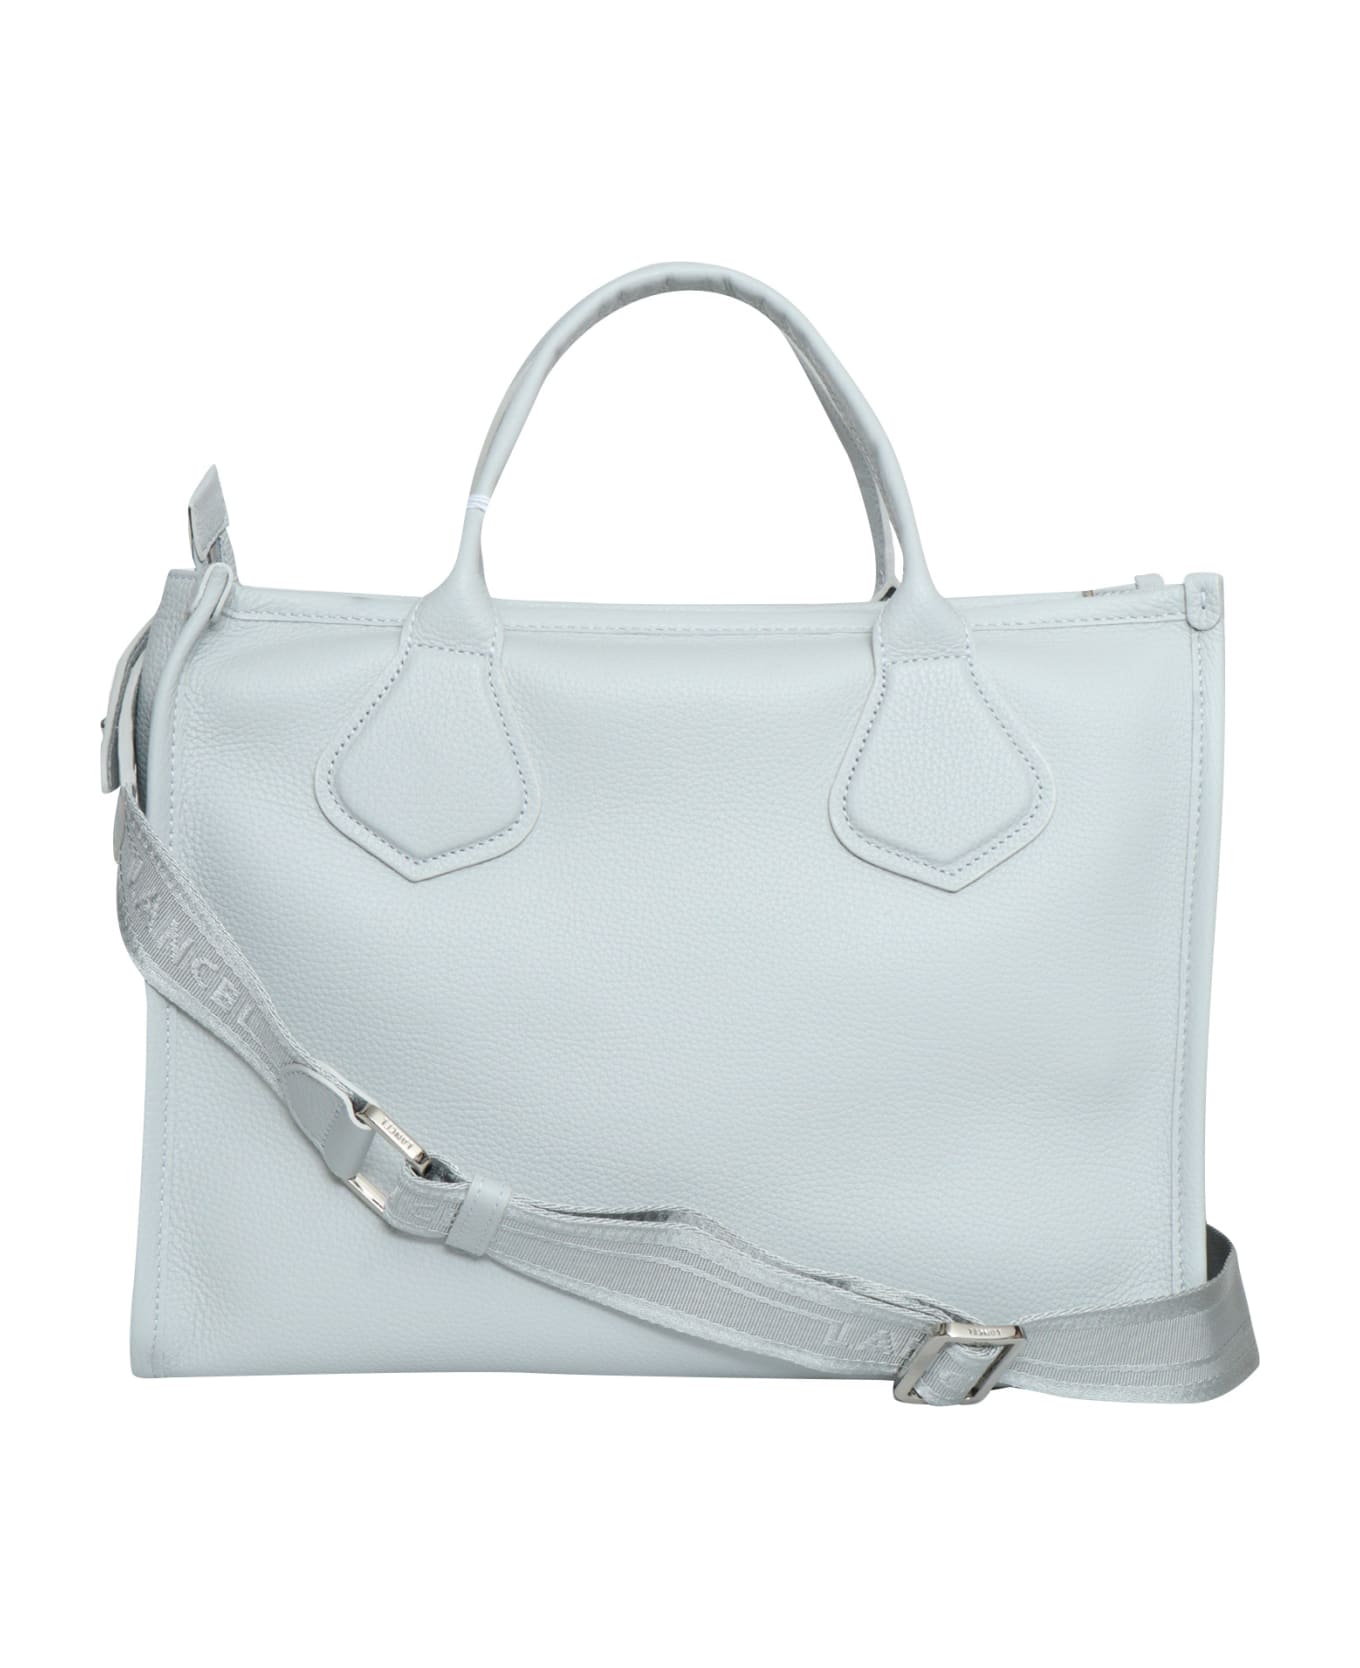 Lancel White Cabas Bag - WHITE